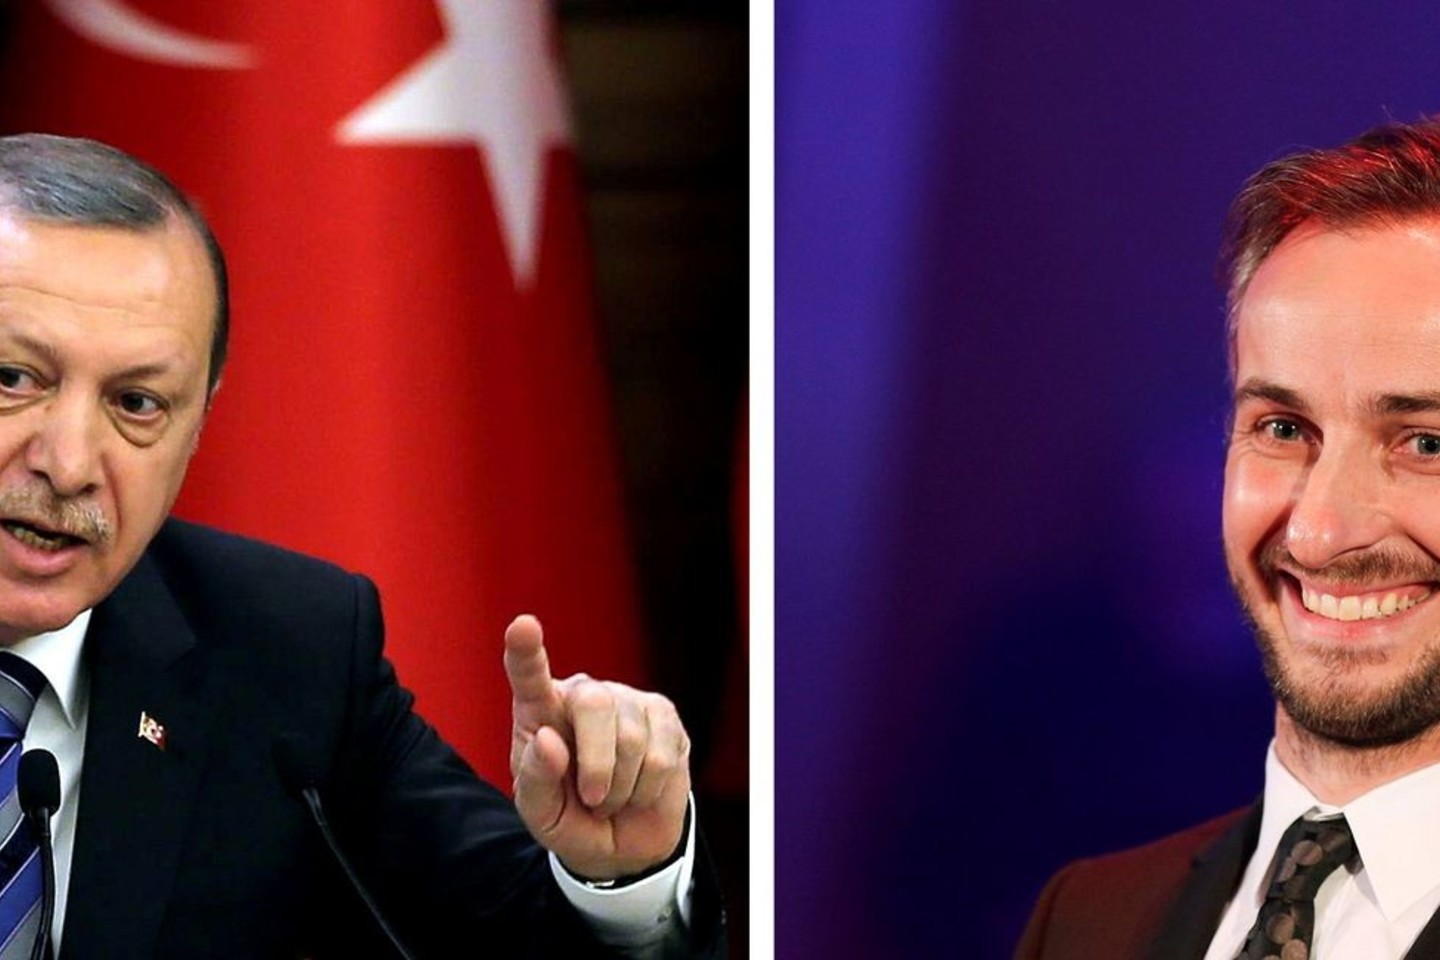 „Erdogano mėsainio“ sudėtyje yra ožkos sūrio, o tai nuoroda į komiko J.Boehmermanno pasišaipymą iš Turkijos prezidento, kad šis yra turėjęs lytinių santykių su ožkomis.<br>AFP/“Scanpix“ nuotr.